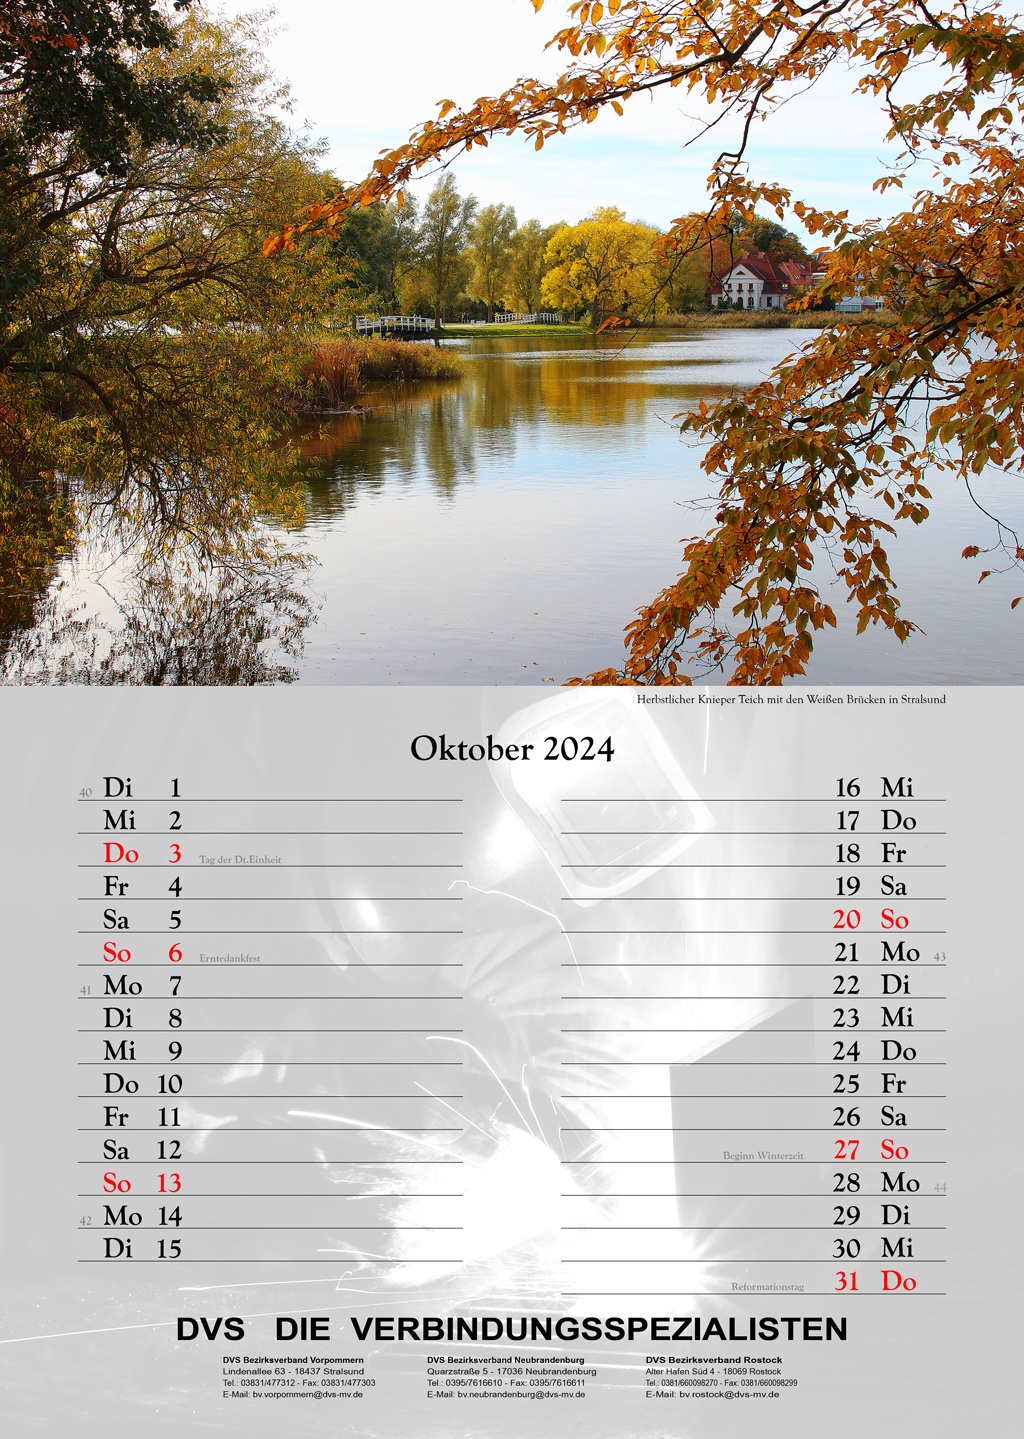 Herbstlicher Knieper-Teich mit den Weißen Brücken in Stralsund